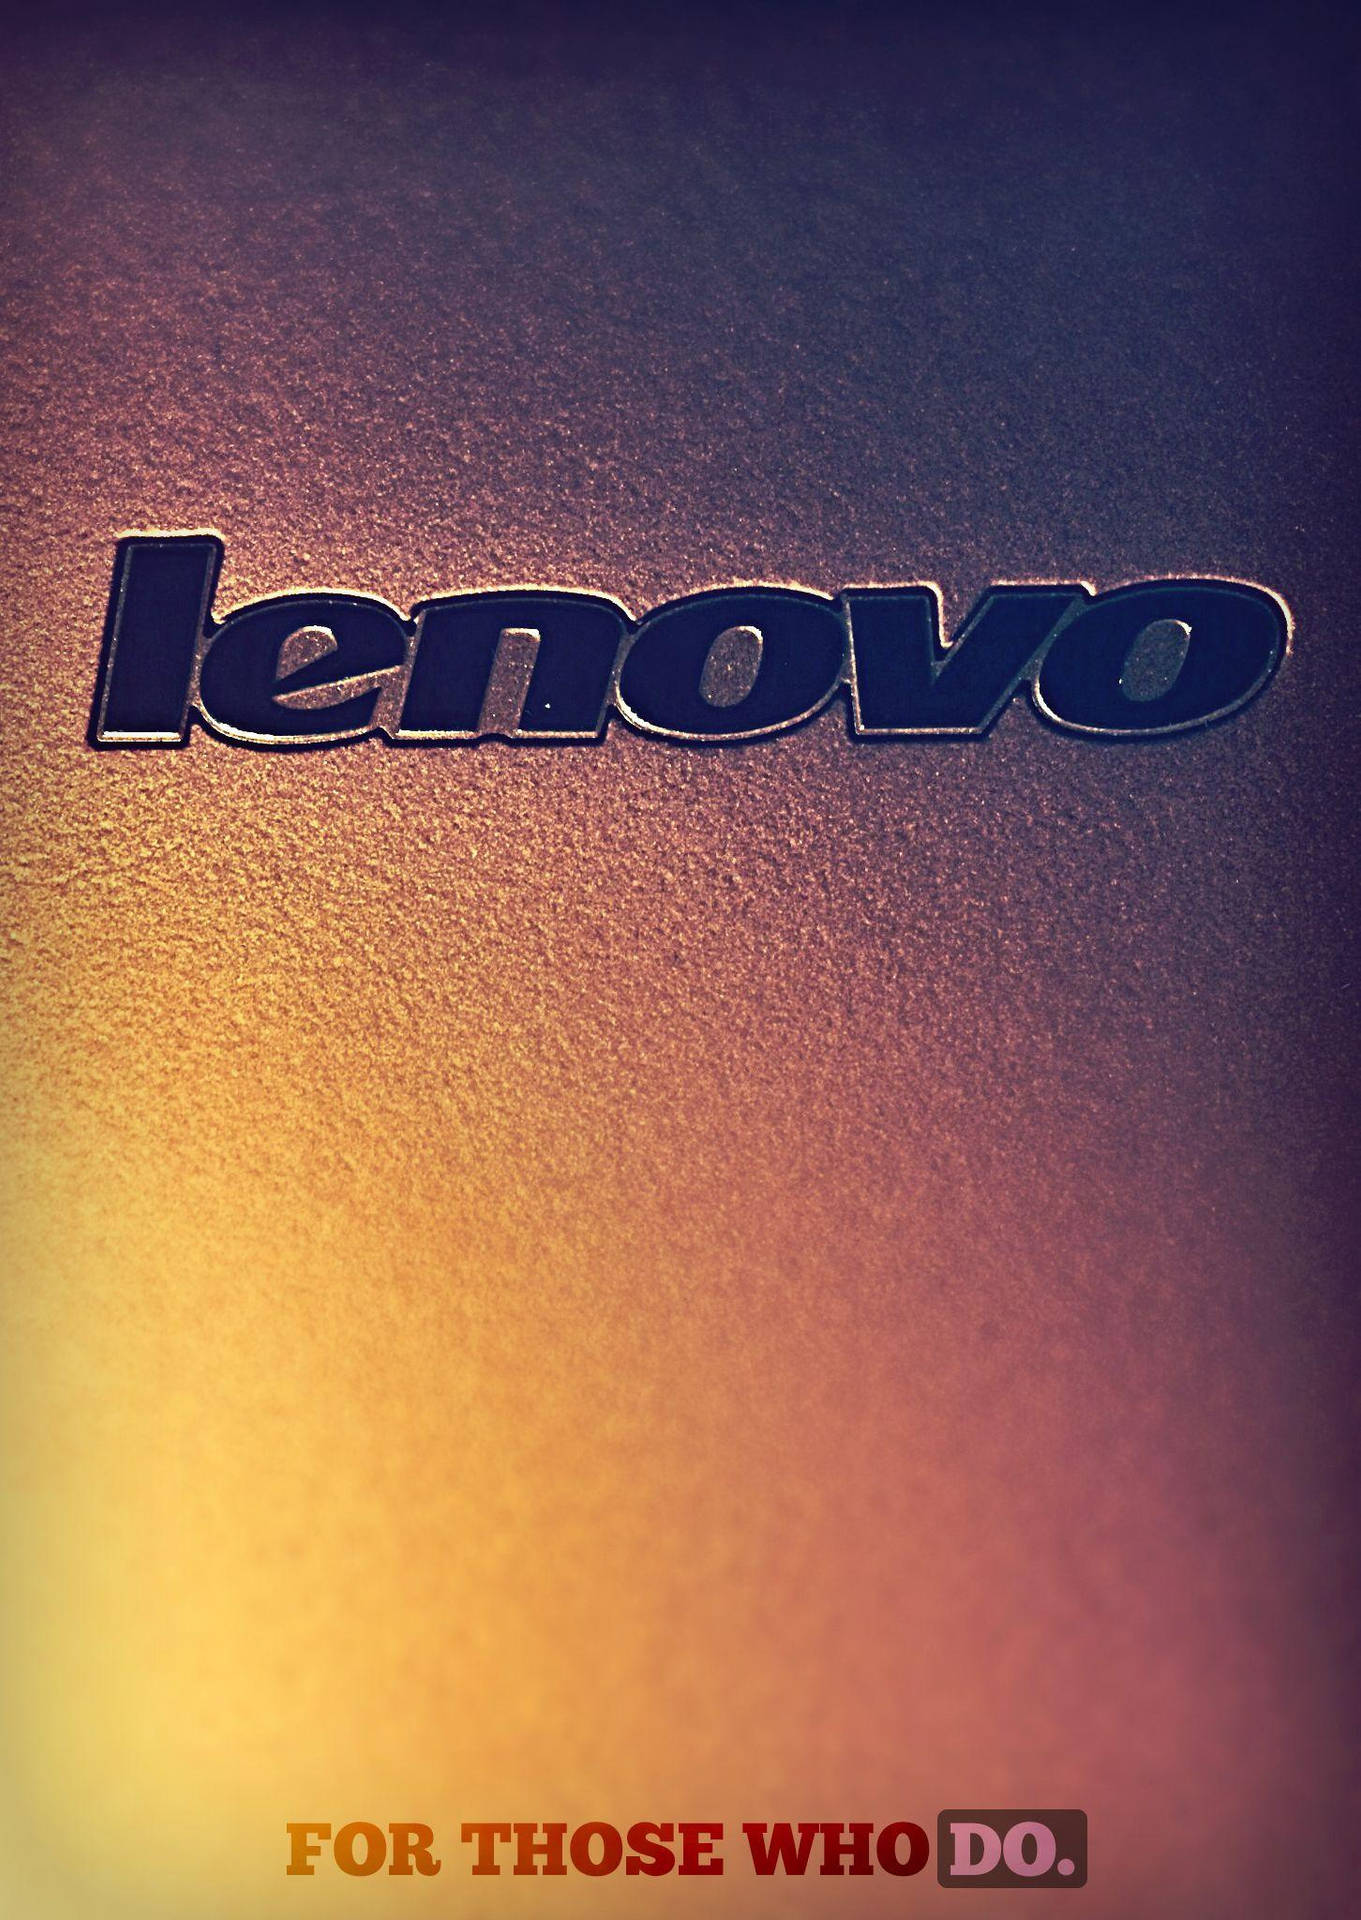 Logode Lenovo Para Portátil En Alta Definición. Fondo de pantalla